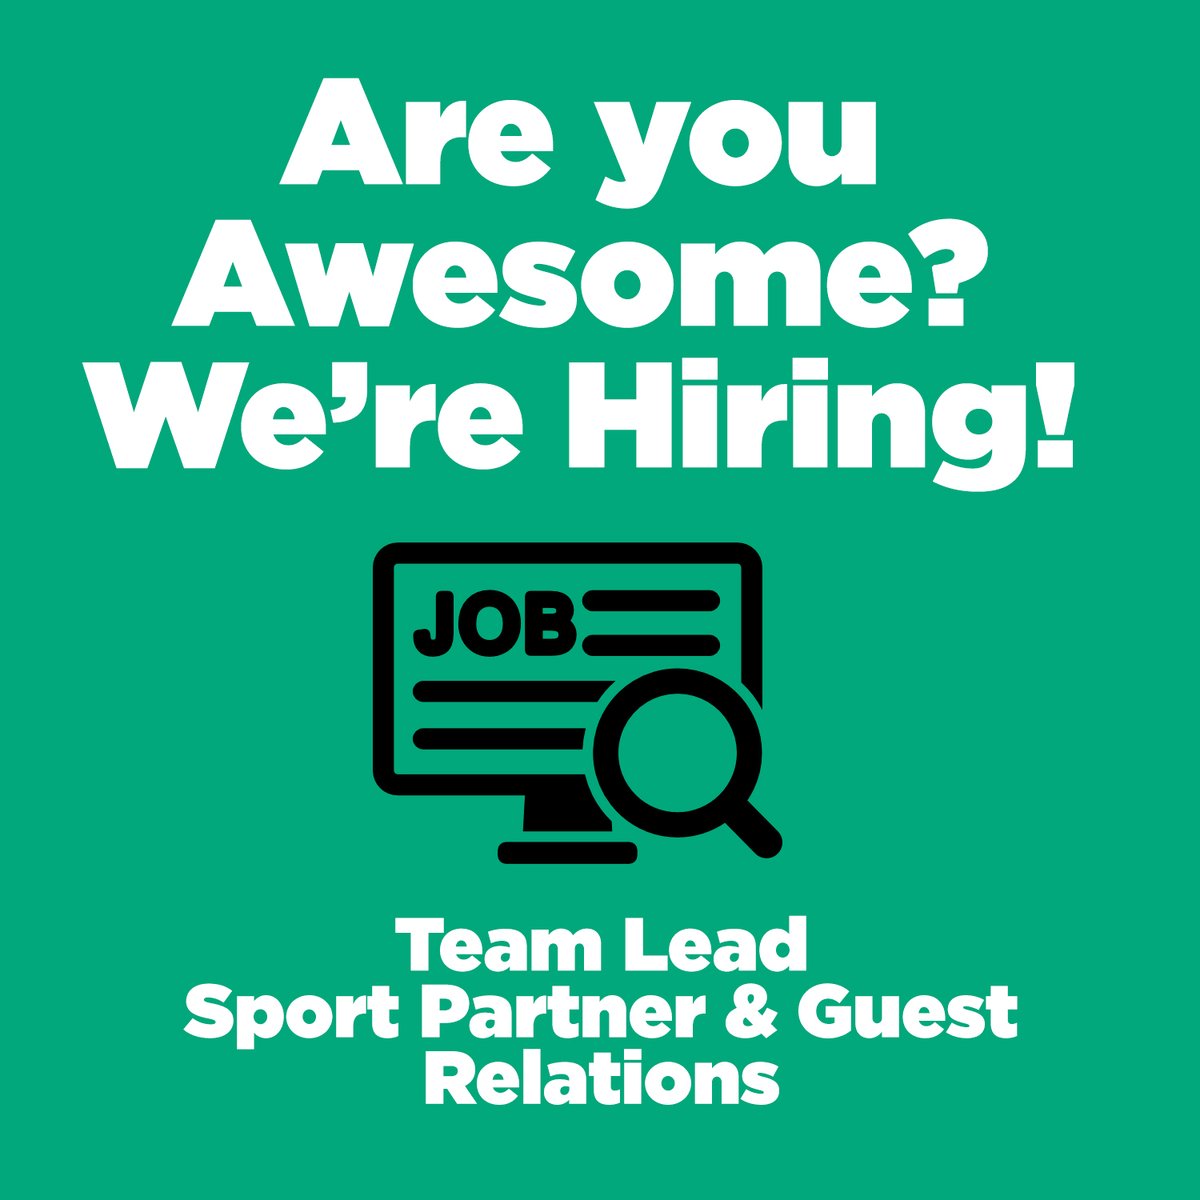 We are hiring!! Team Lead, Sport Partner & Guest Relations. Learn more: careers.ucalgary.ca/jobs/10978676-… #jobs #hiring #ucalgary